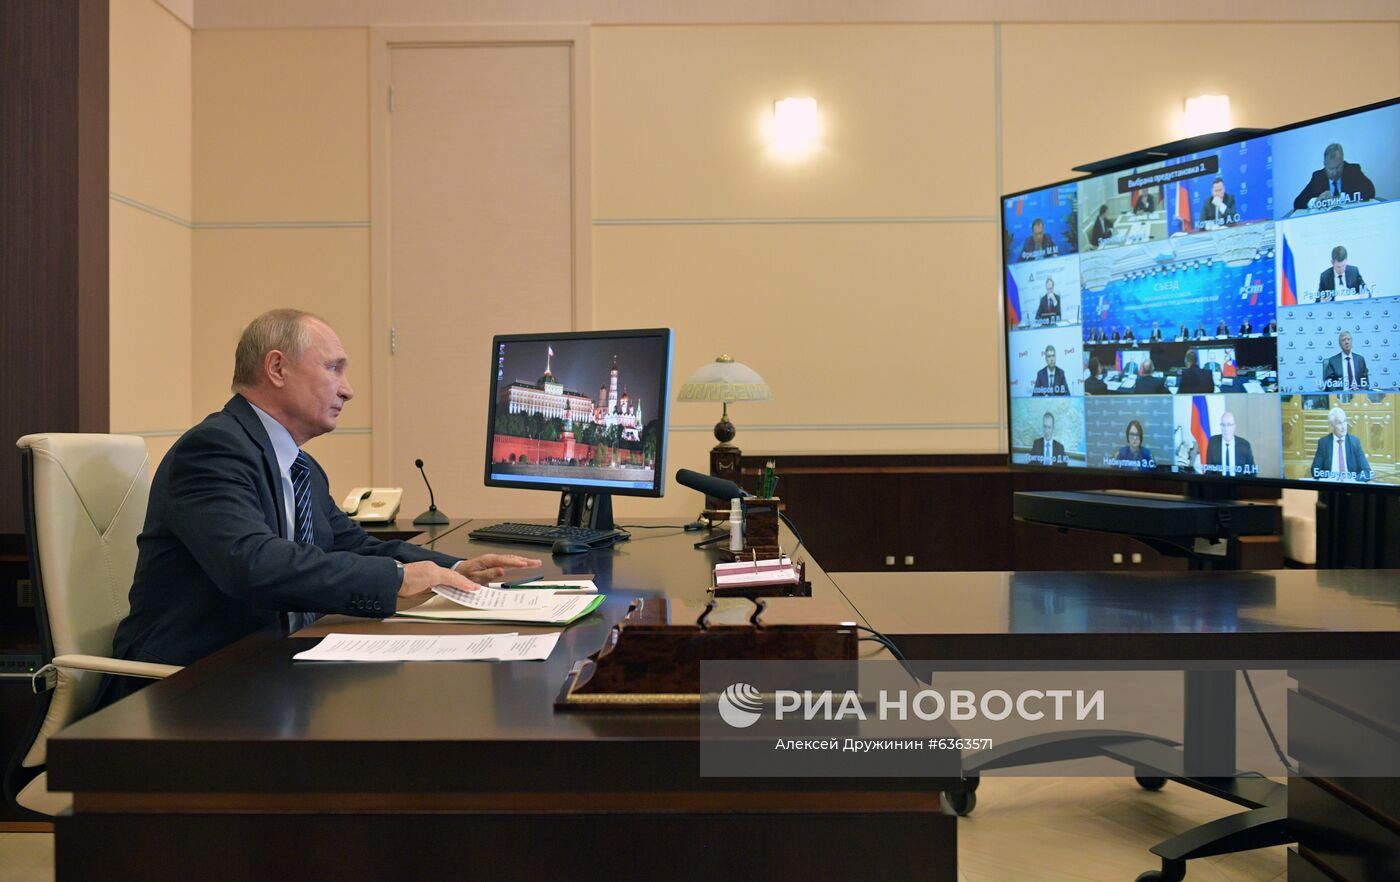 Рабочая встреча президента РФ В. Путина с членами правления РСПП